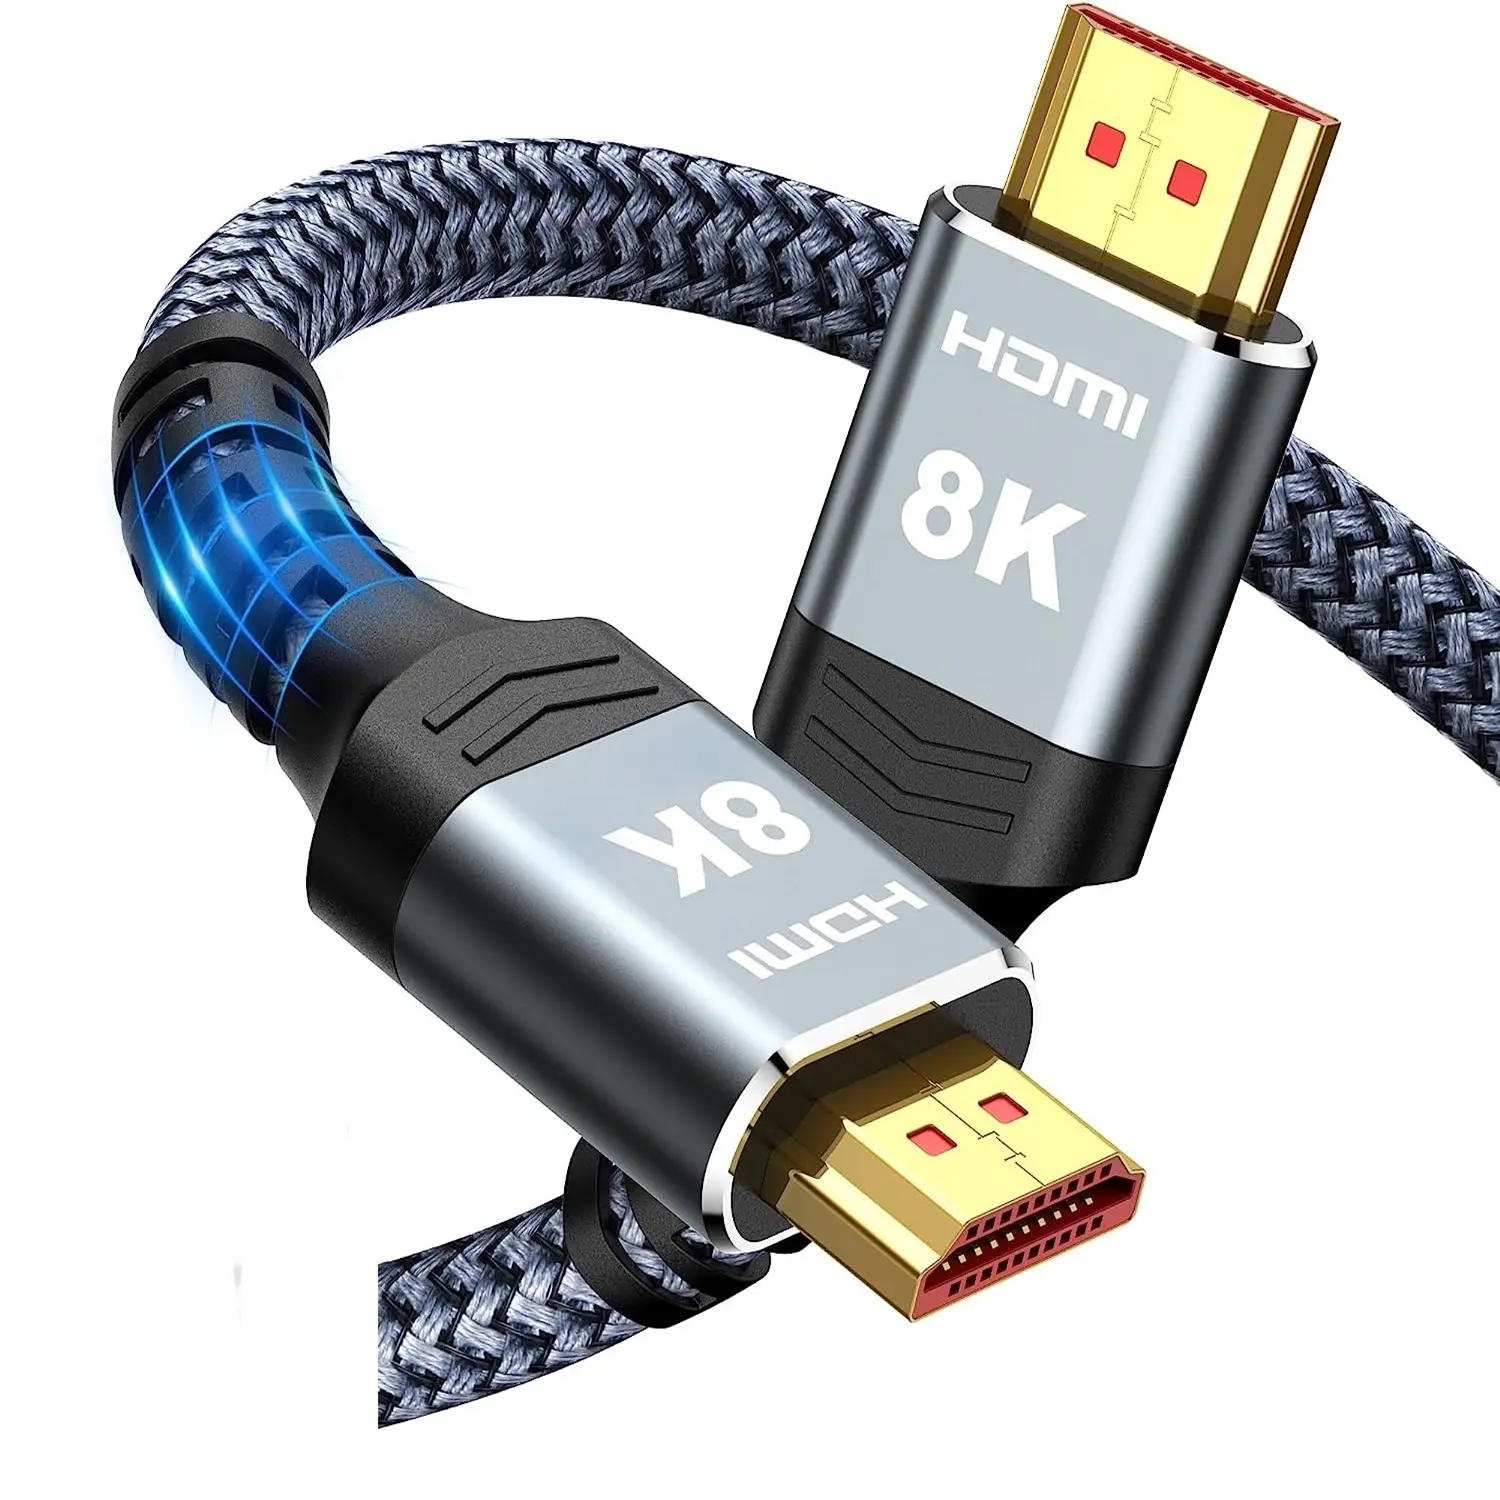 10 K 8 K 인증 초고속 HDMI 코드, HDTV 등을위한 4K @ 120Hz 8 K @ 60Hz HDMI 2.1 케이블 HDMI 케이블 지원